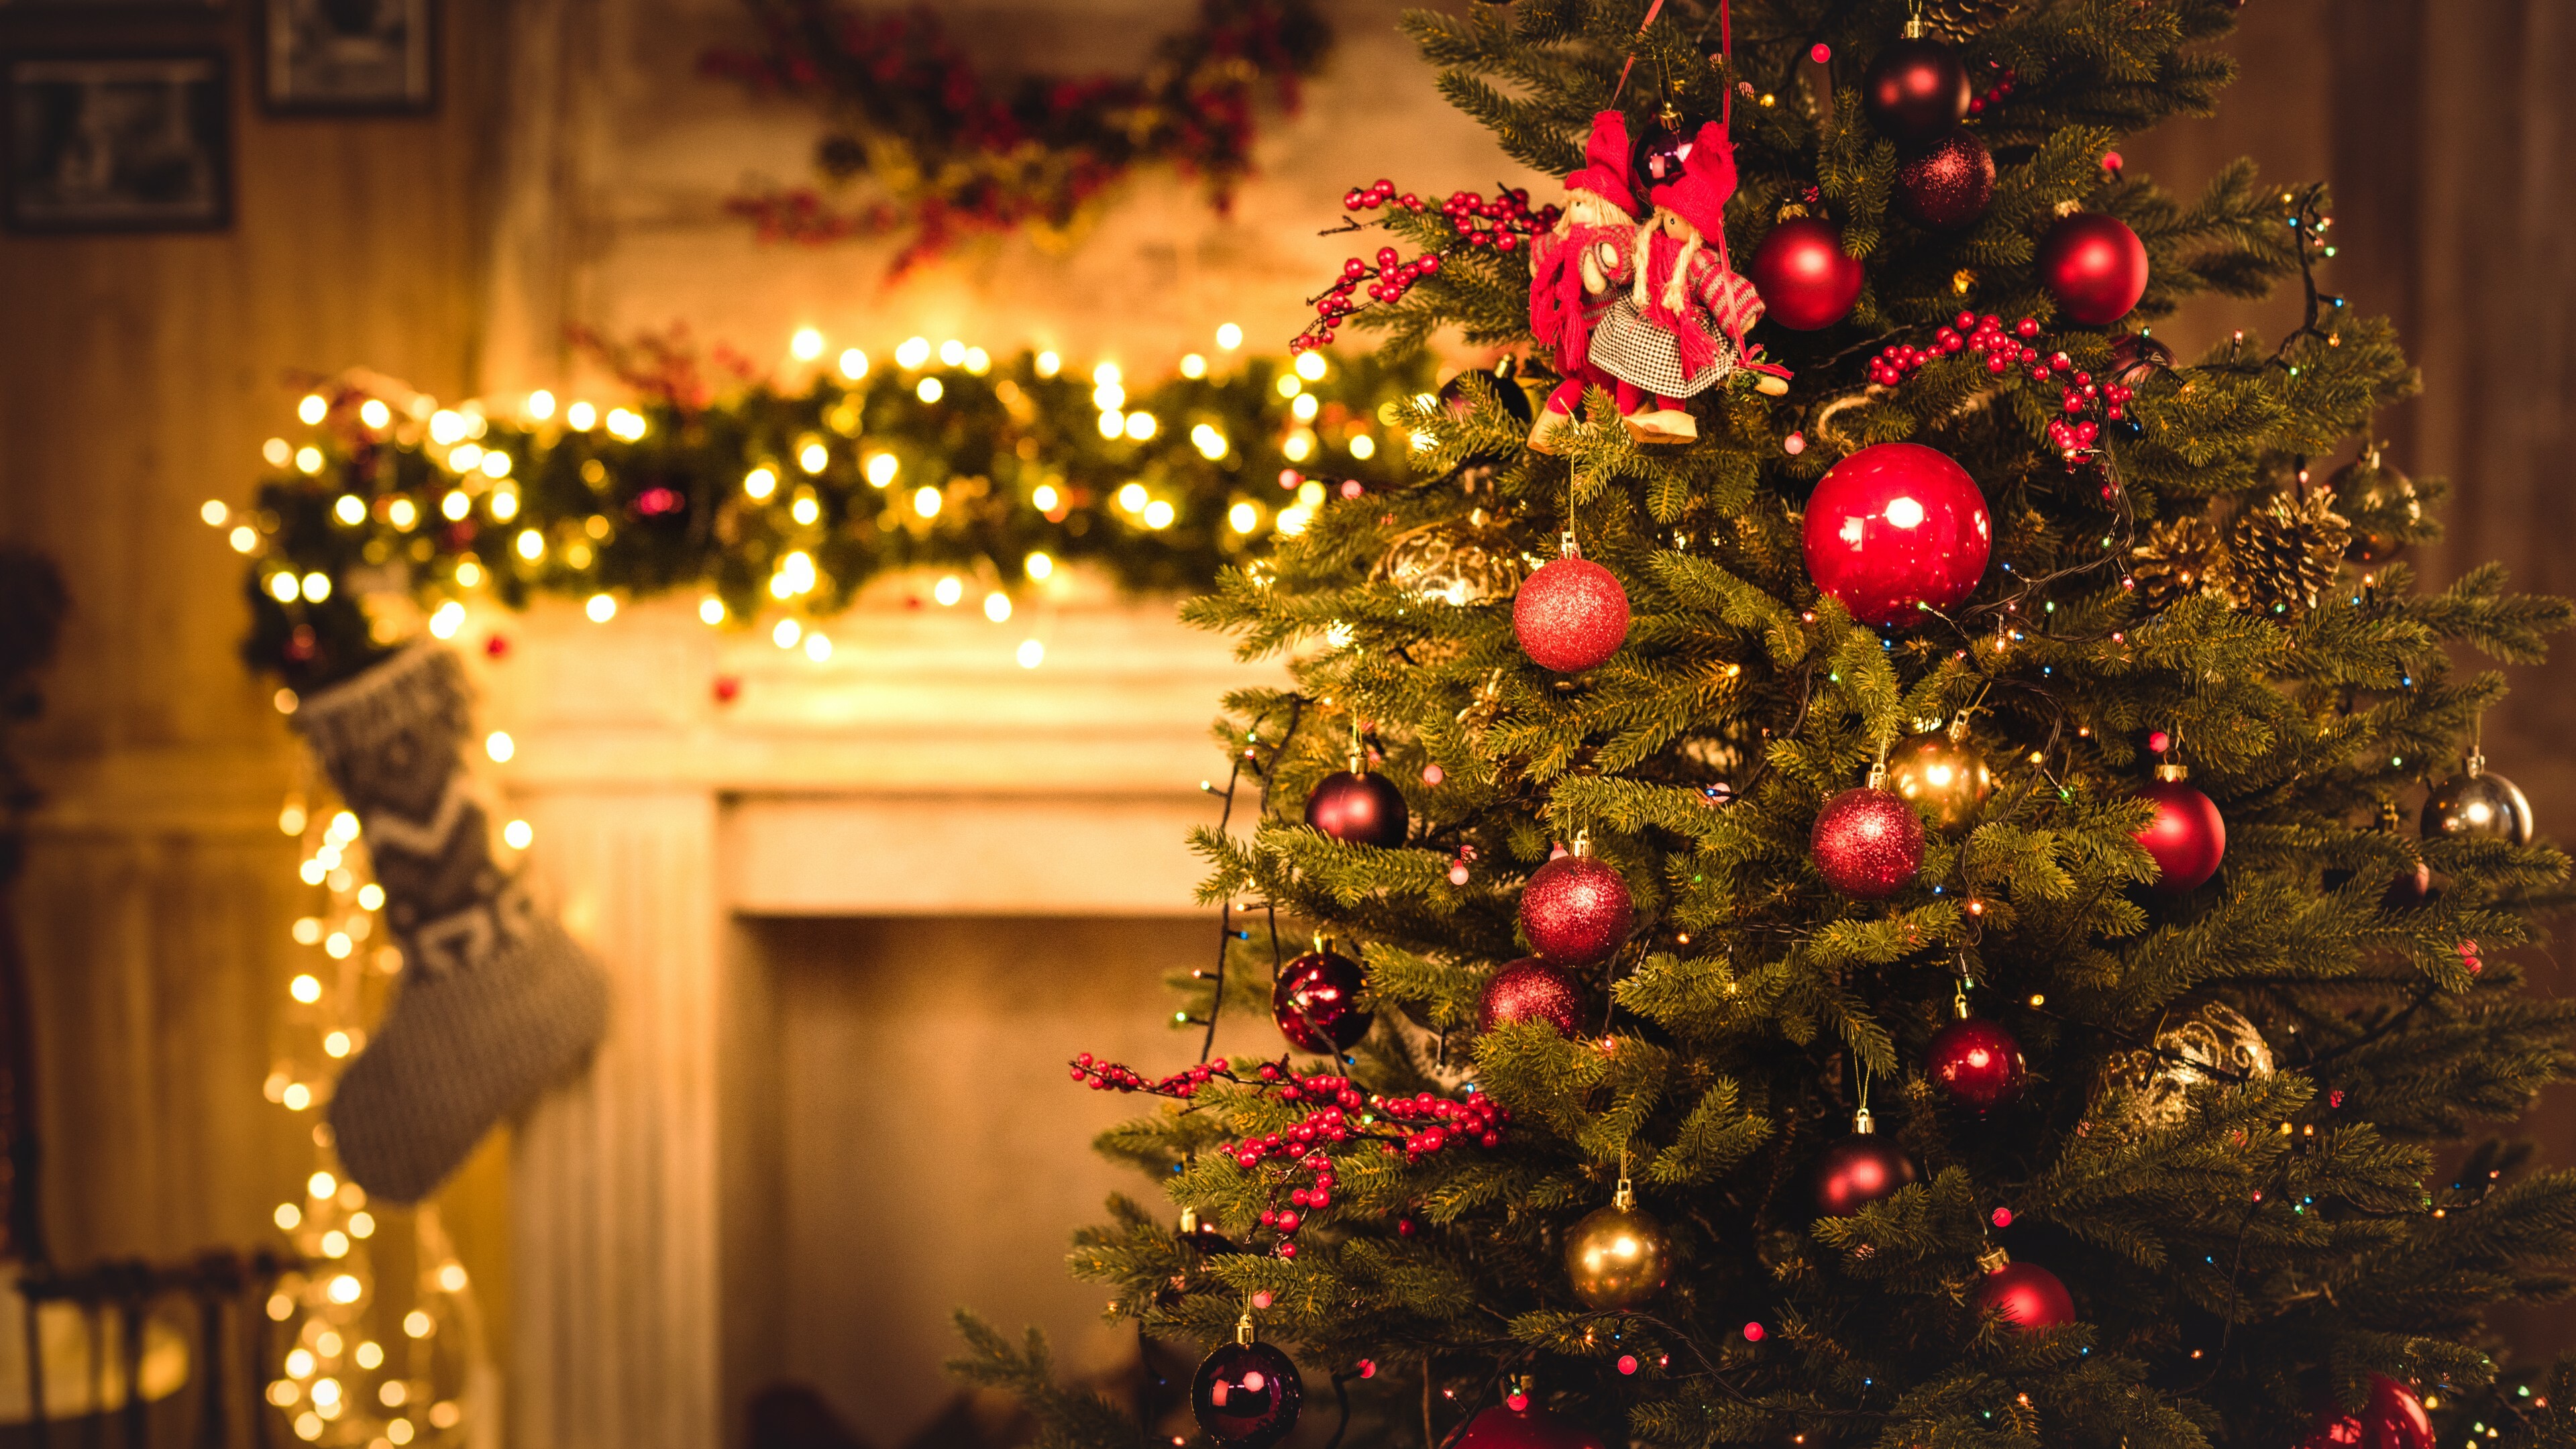 Christmas Ornament: Evergreen, Celebration, Aesthetic. 3840x2160 4K Wallpaper.